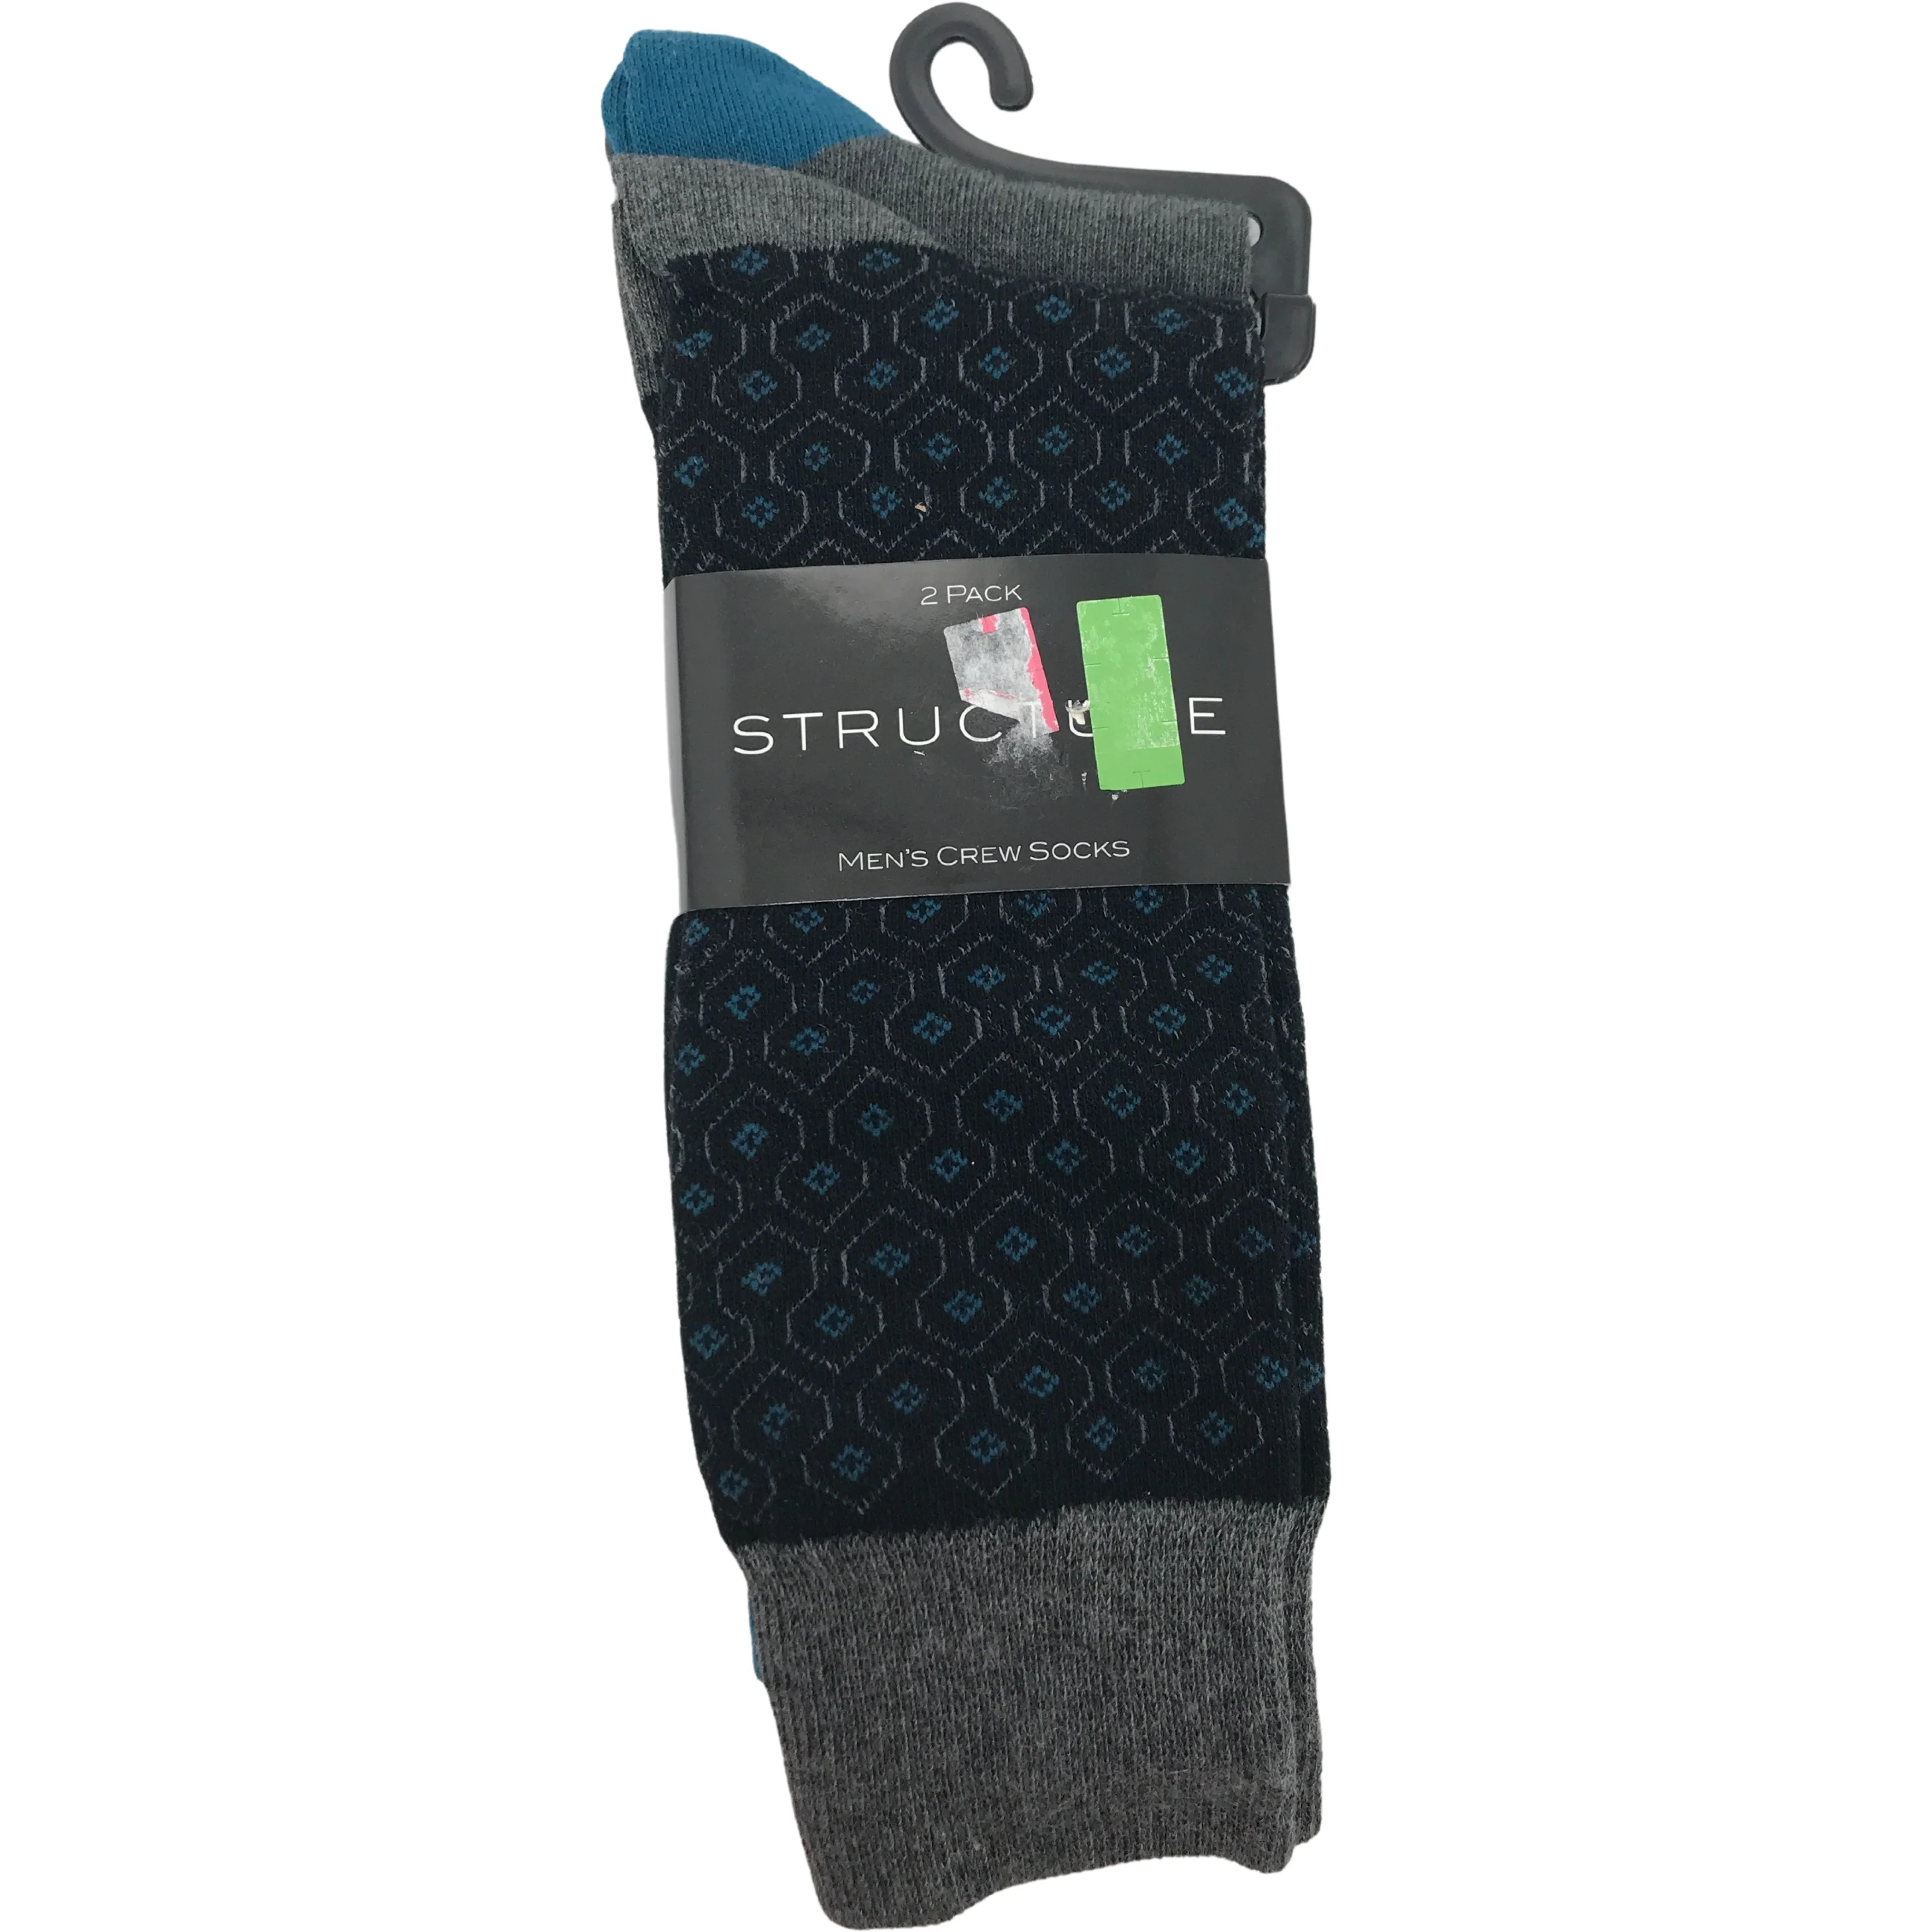 Structure Men's Socks / Crew Socks / Dress Socks / 2 Pack / Various Designs